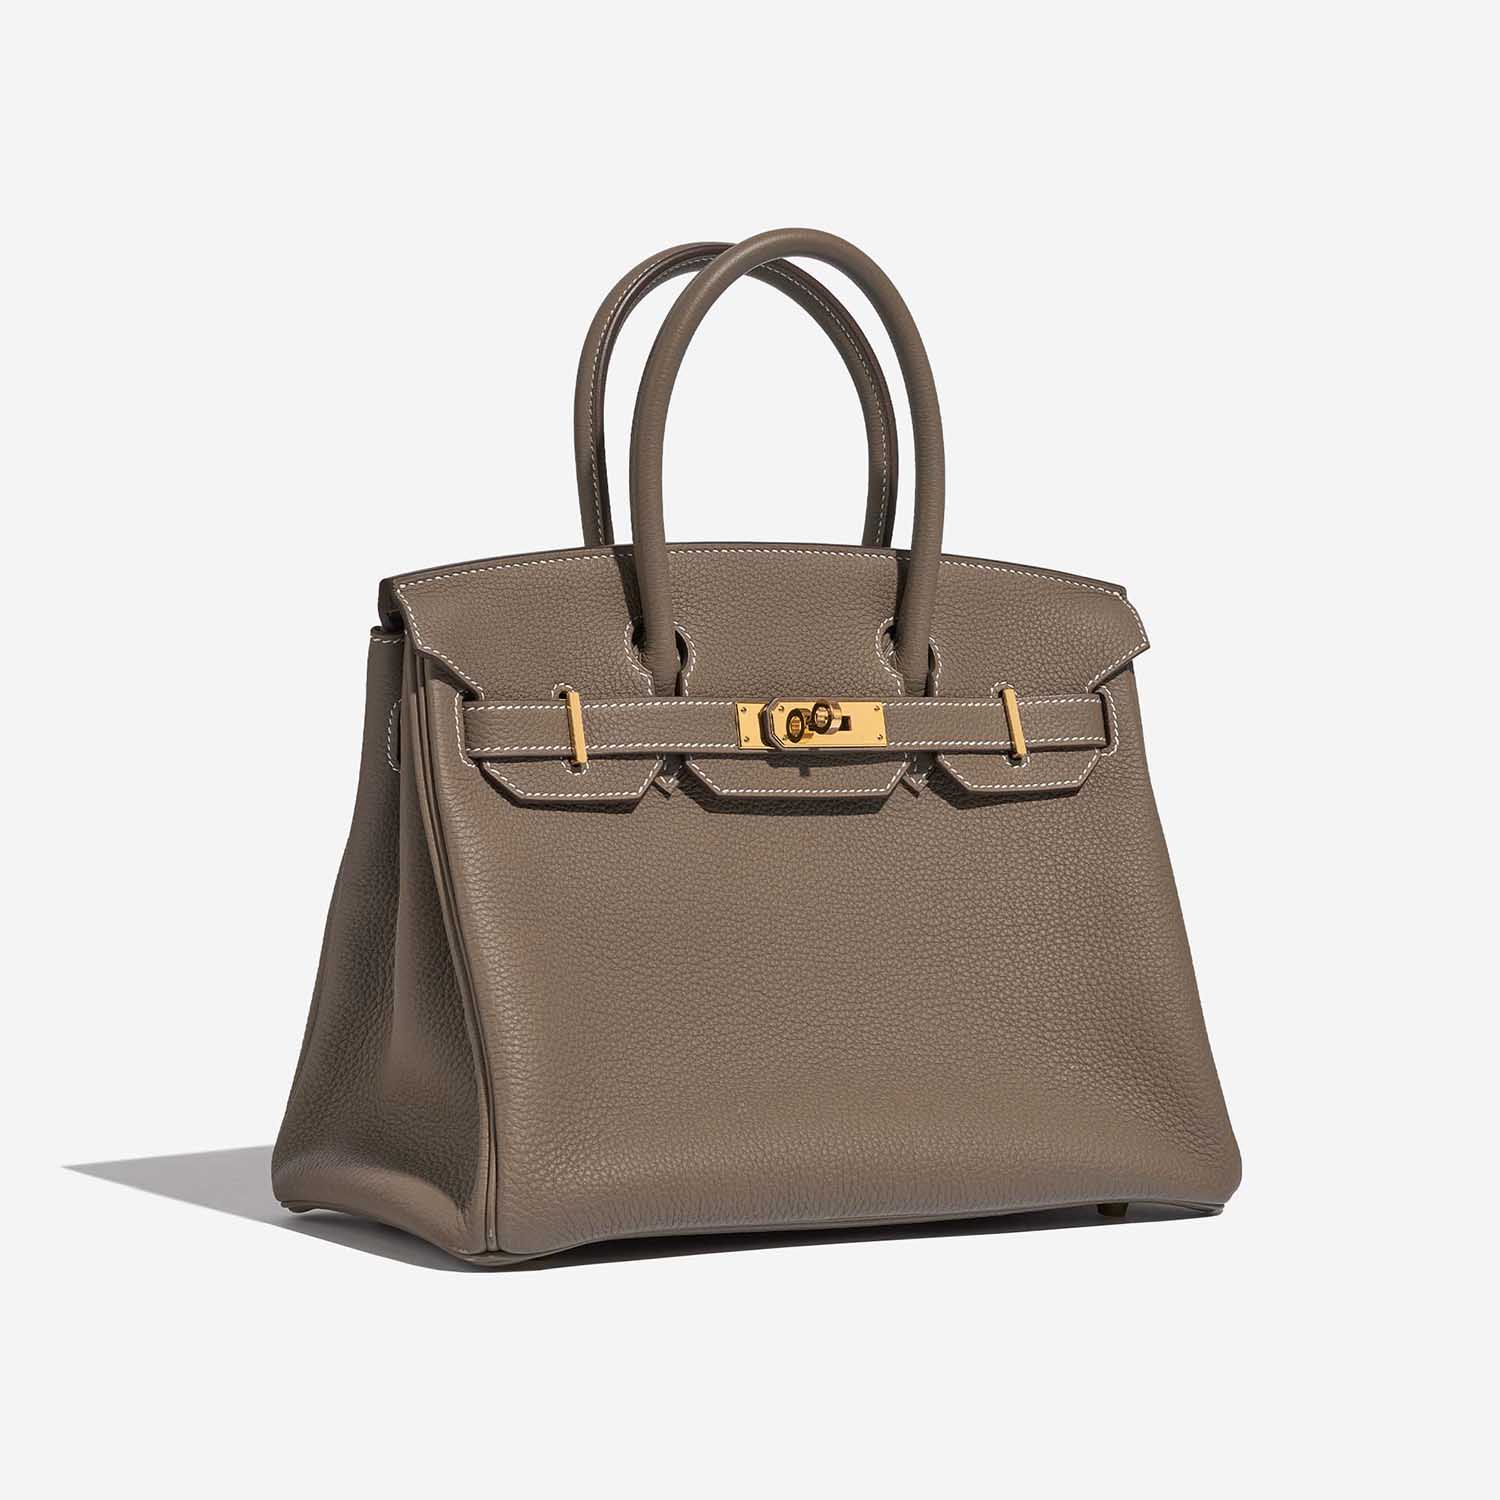 Pre-owned Hermès Tasche Birkin 30 Togo Etoupe Brown Side Front | Verkaufen Sie Ihre Designer-Tasche auf Saclab.com